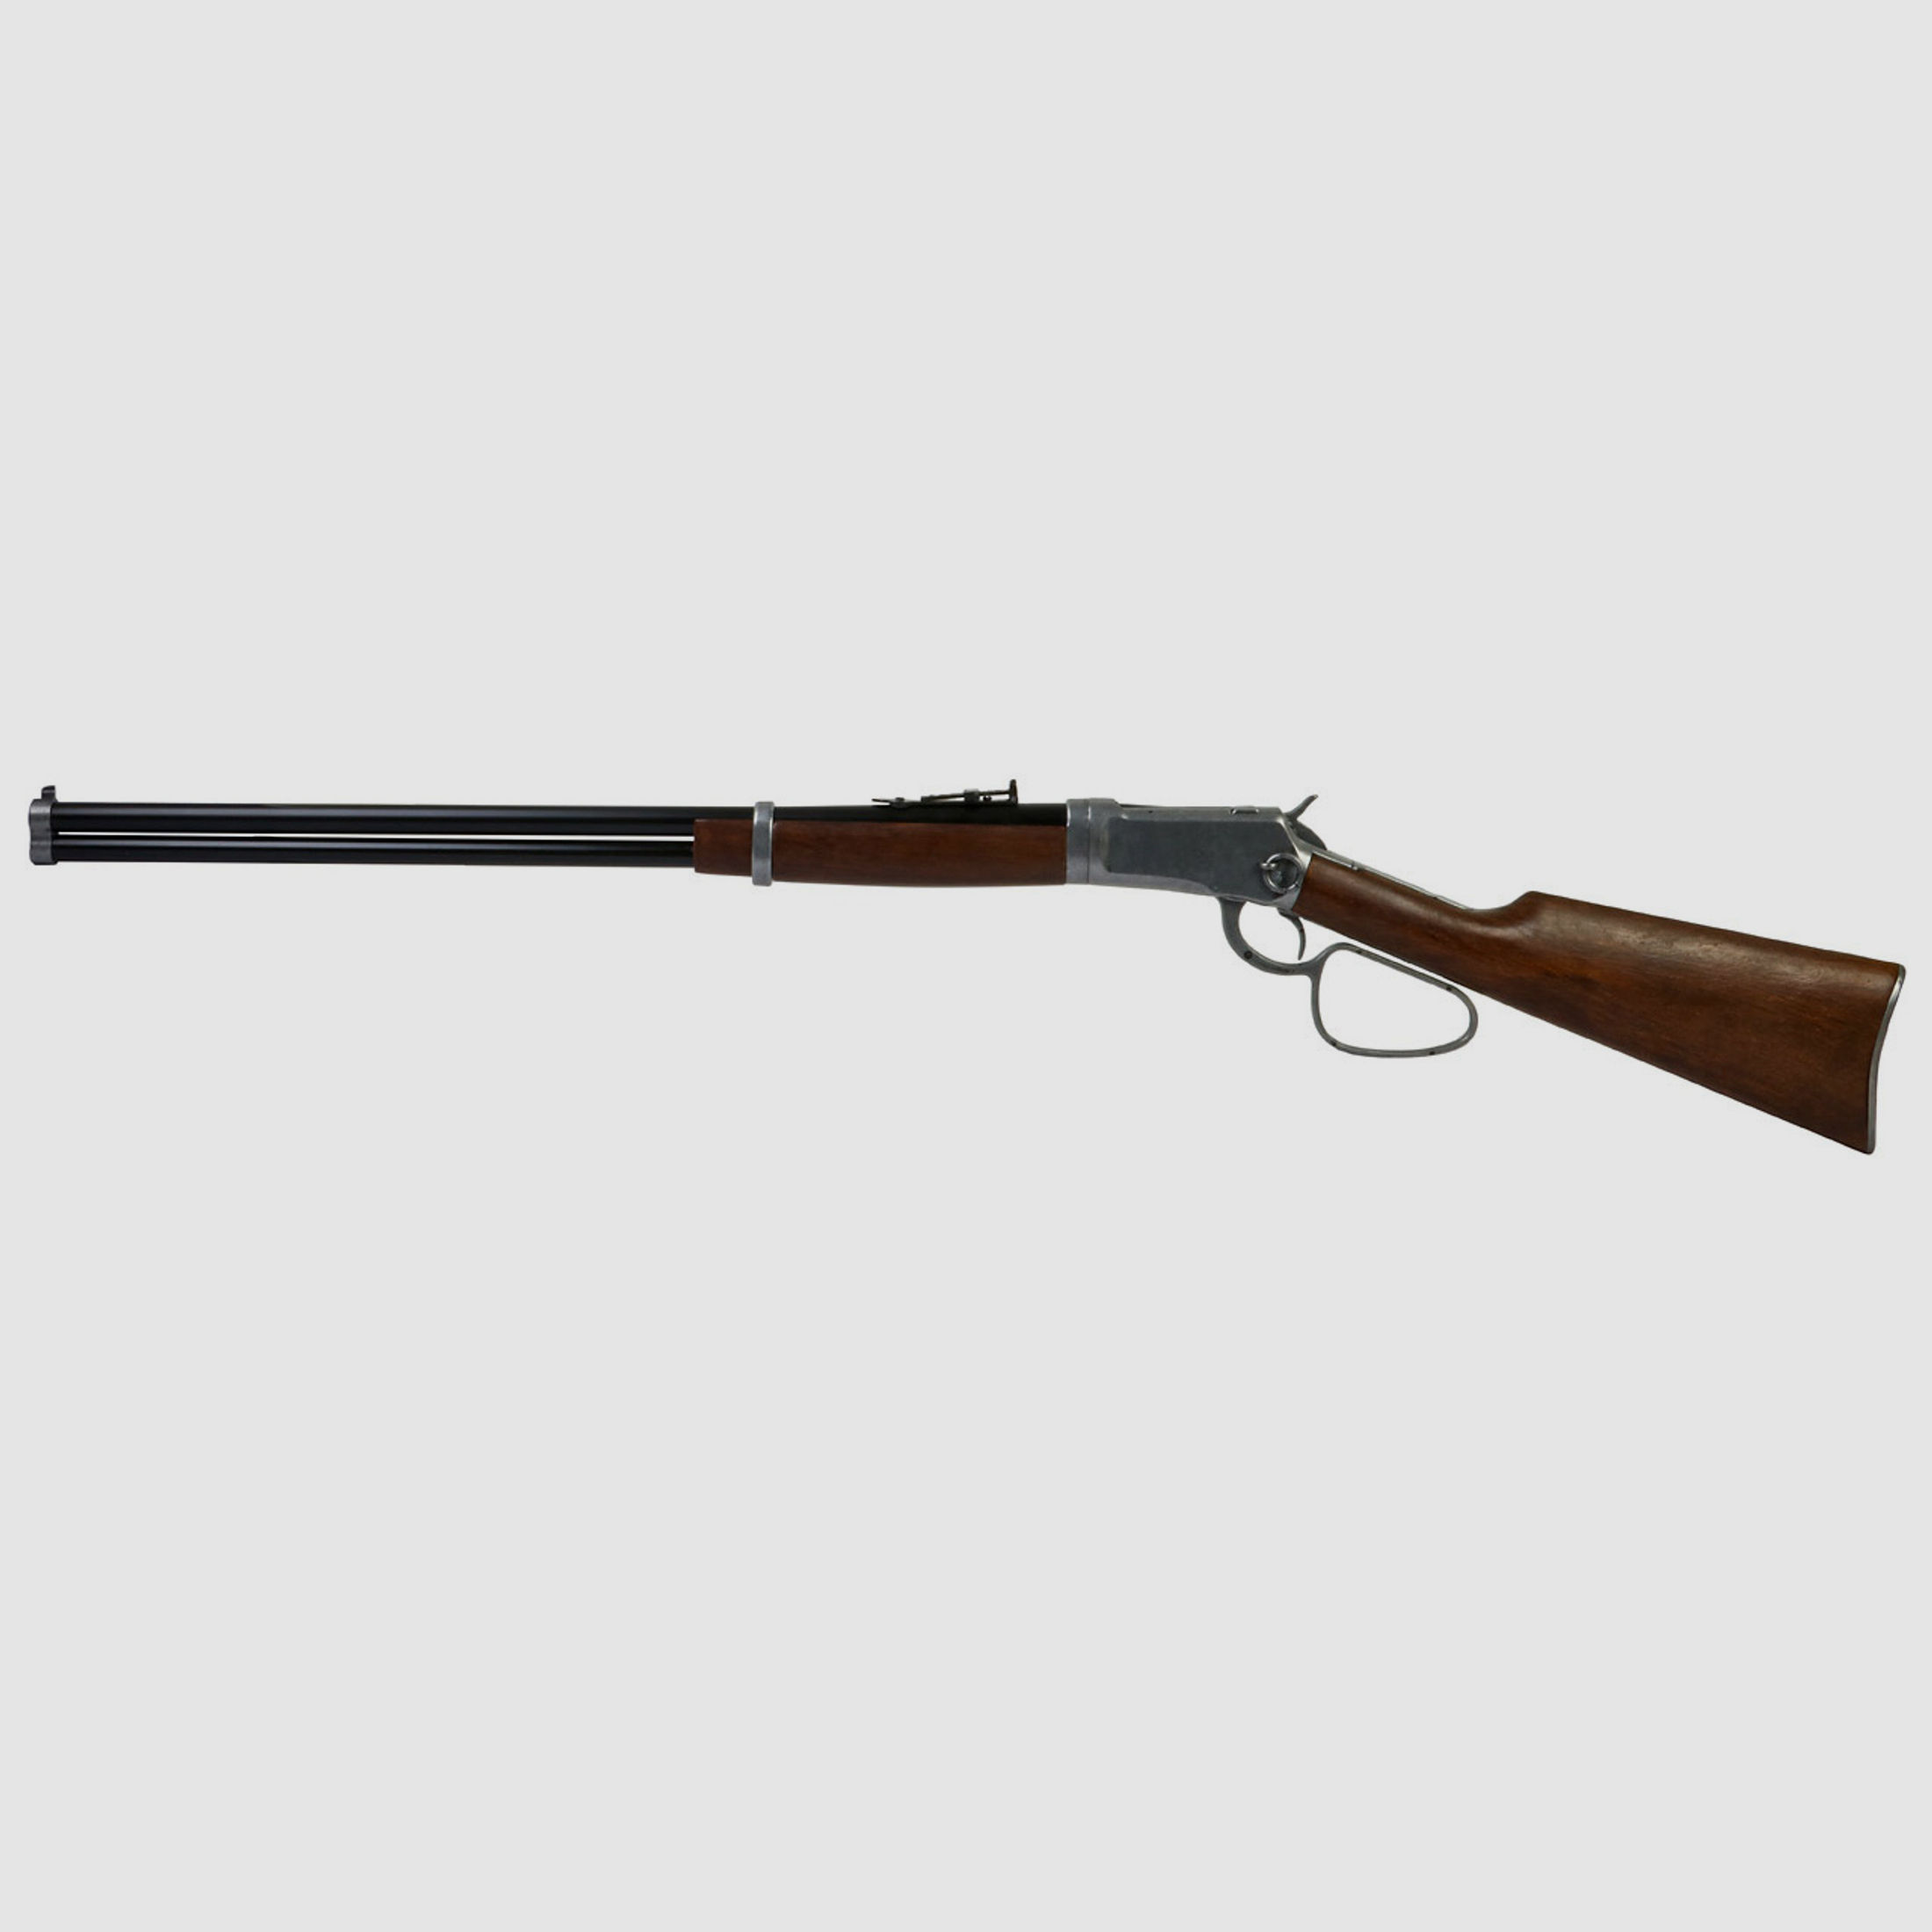 B-Ware Deko Westerngewehr Kolser Winchester 92 Carbine Long Range USA 1892 realistisches Repetieren mit HĂĽlsenauswurf LĂ¤nge 108 cm altgrau